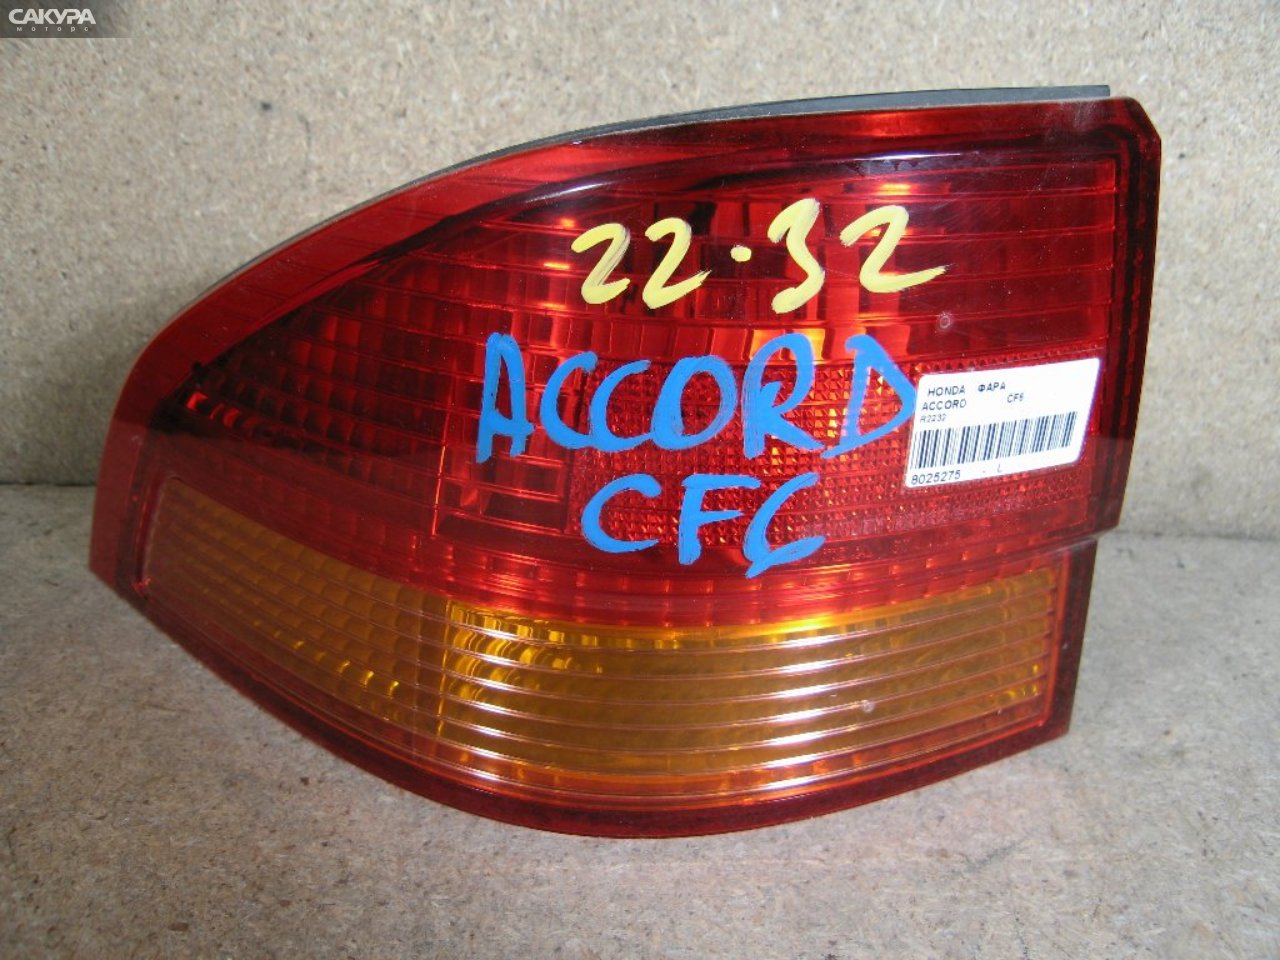 Фонарь стоп-сигнала левый Honda Accord Wagon CF6 R2232: купить в Сакура Абакан.